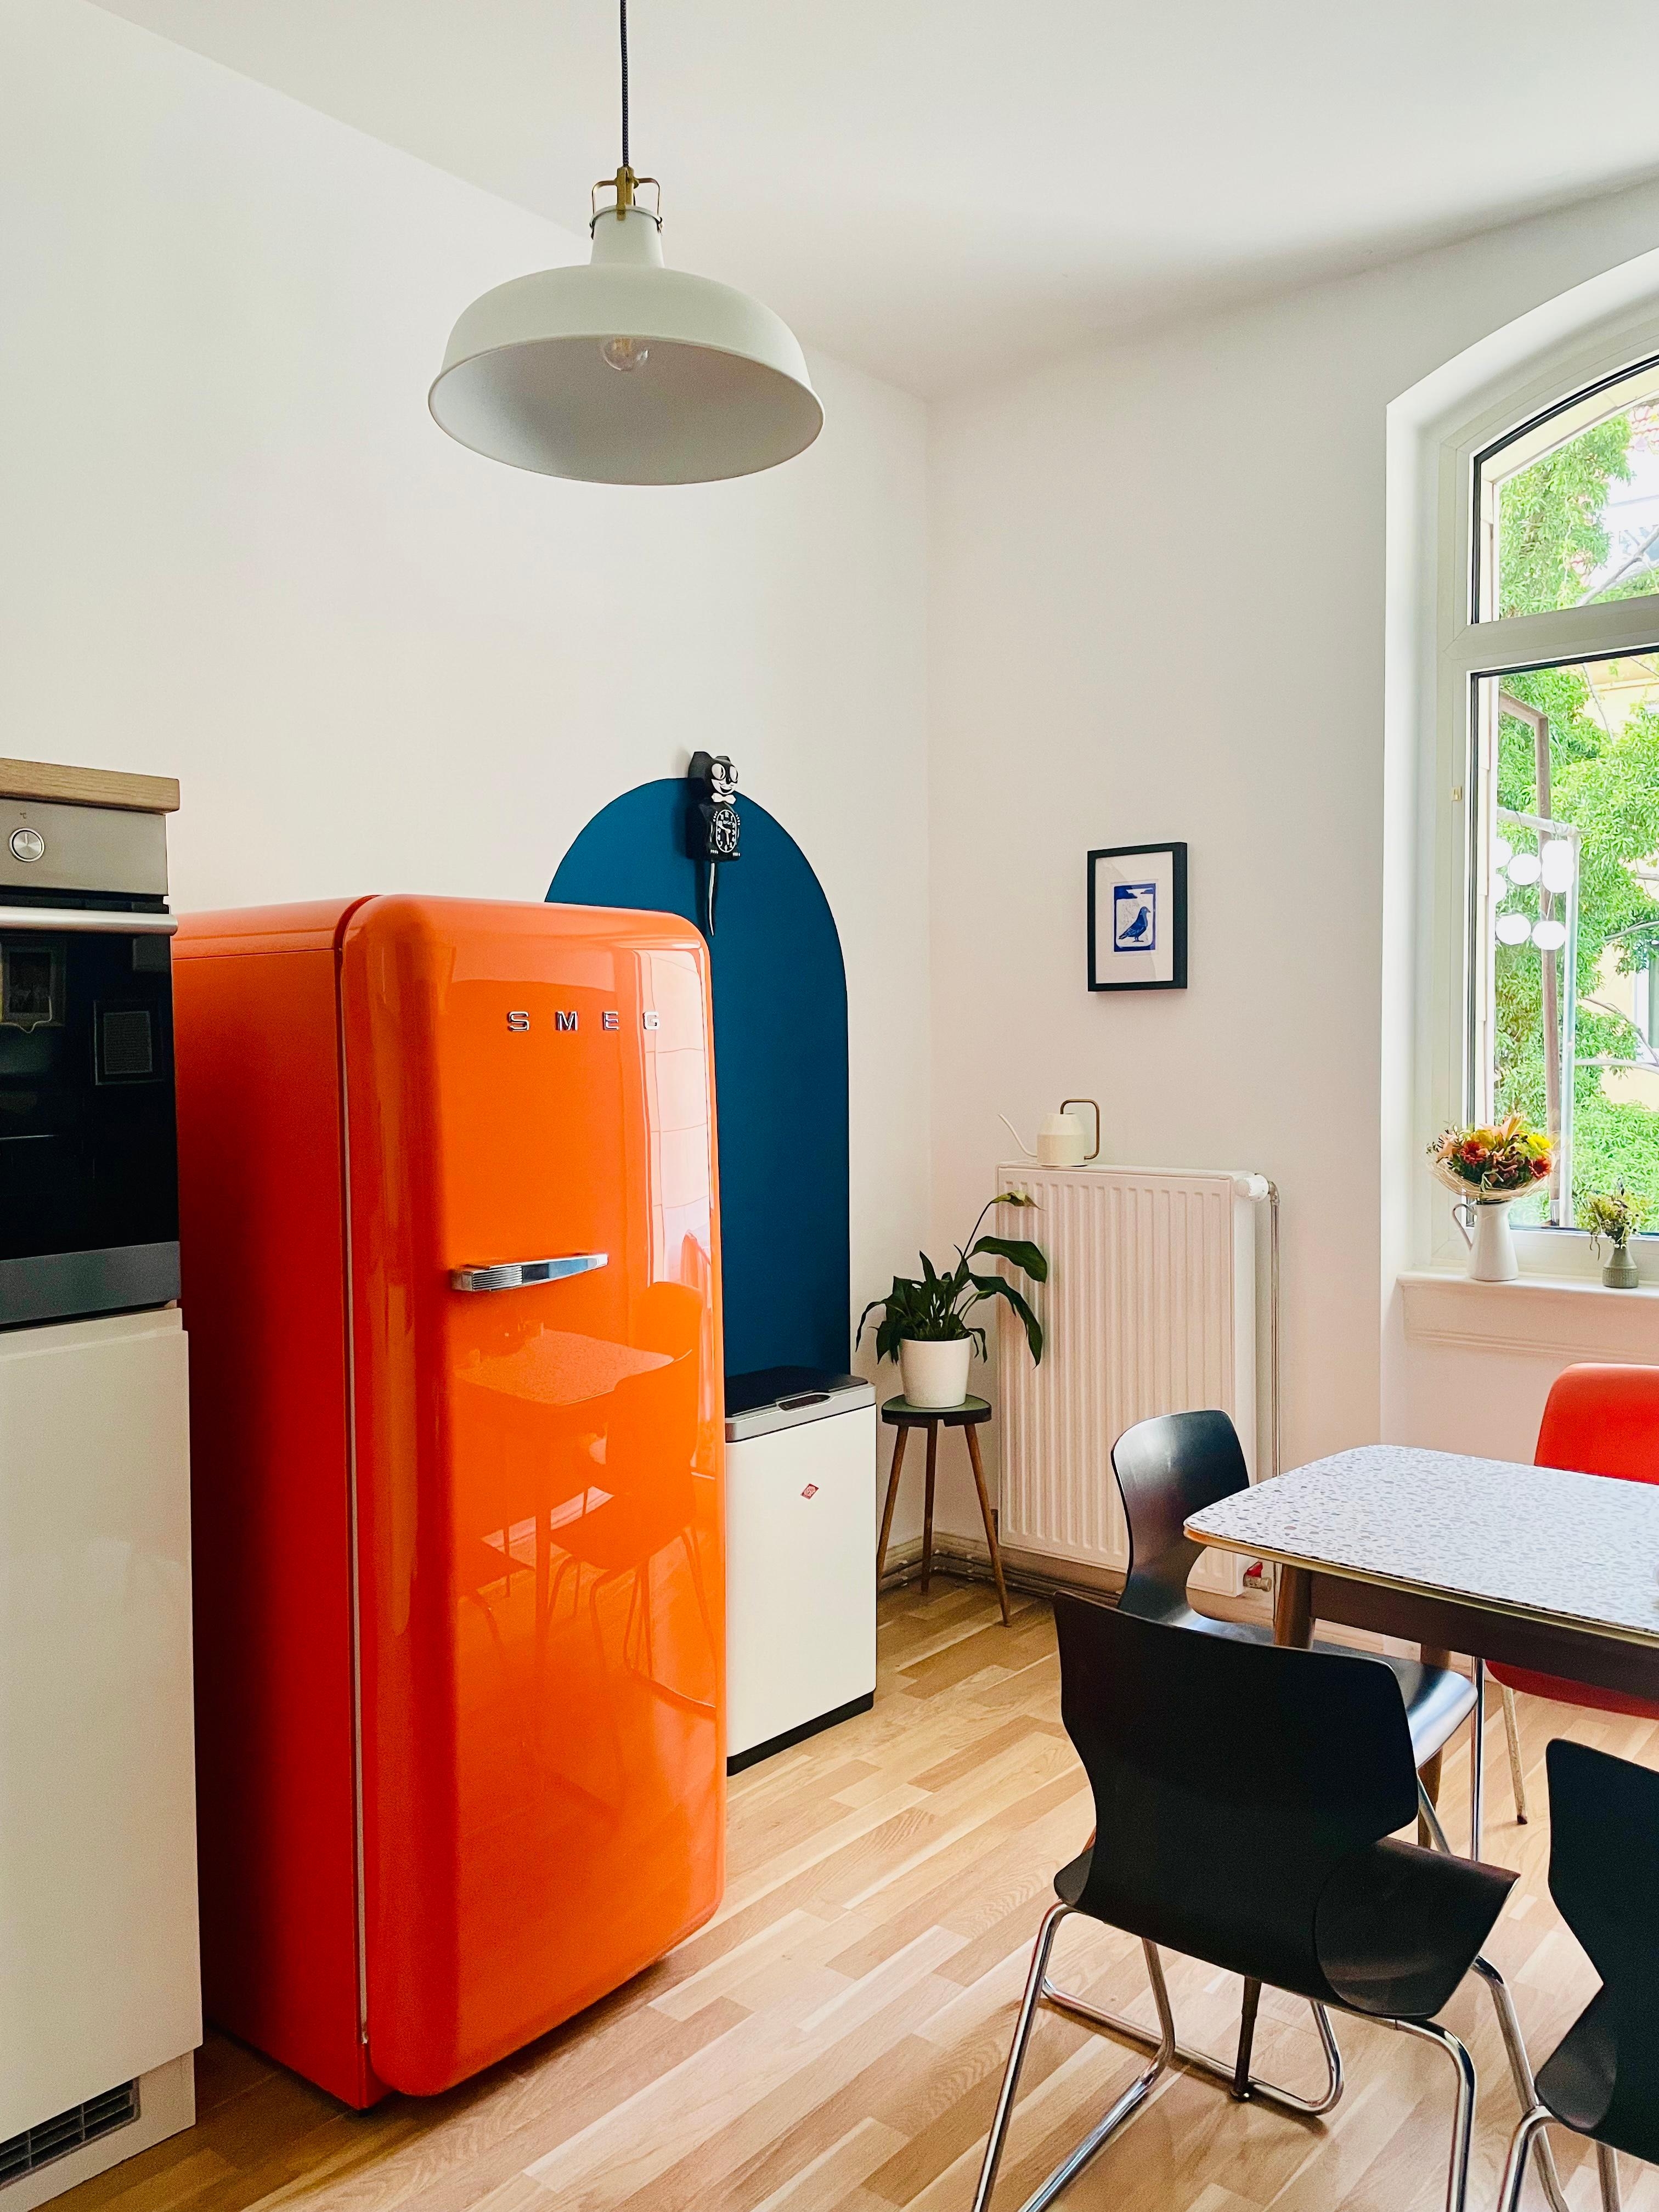 Meine Küche mit dem farblichen Highlight: der orangefarbene Kühlschrank. 🧡 #küche #altbau #altbauküche #farbakzente